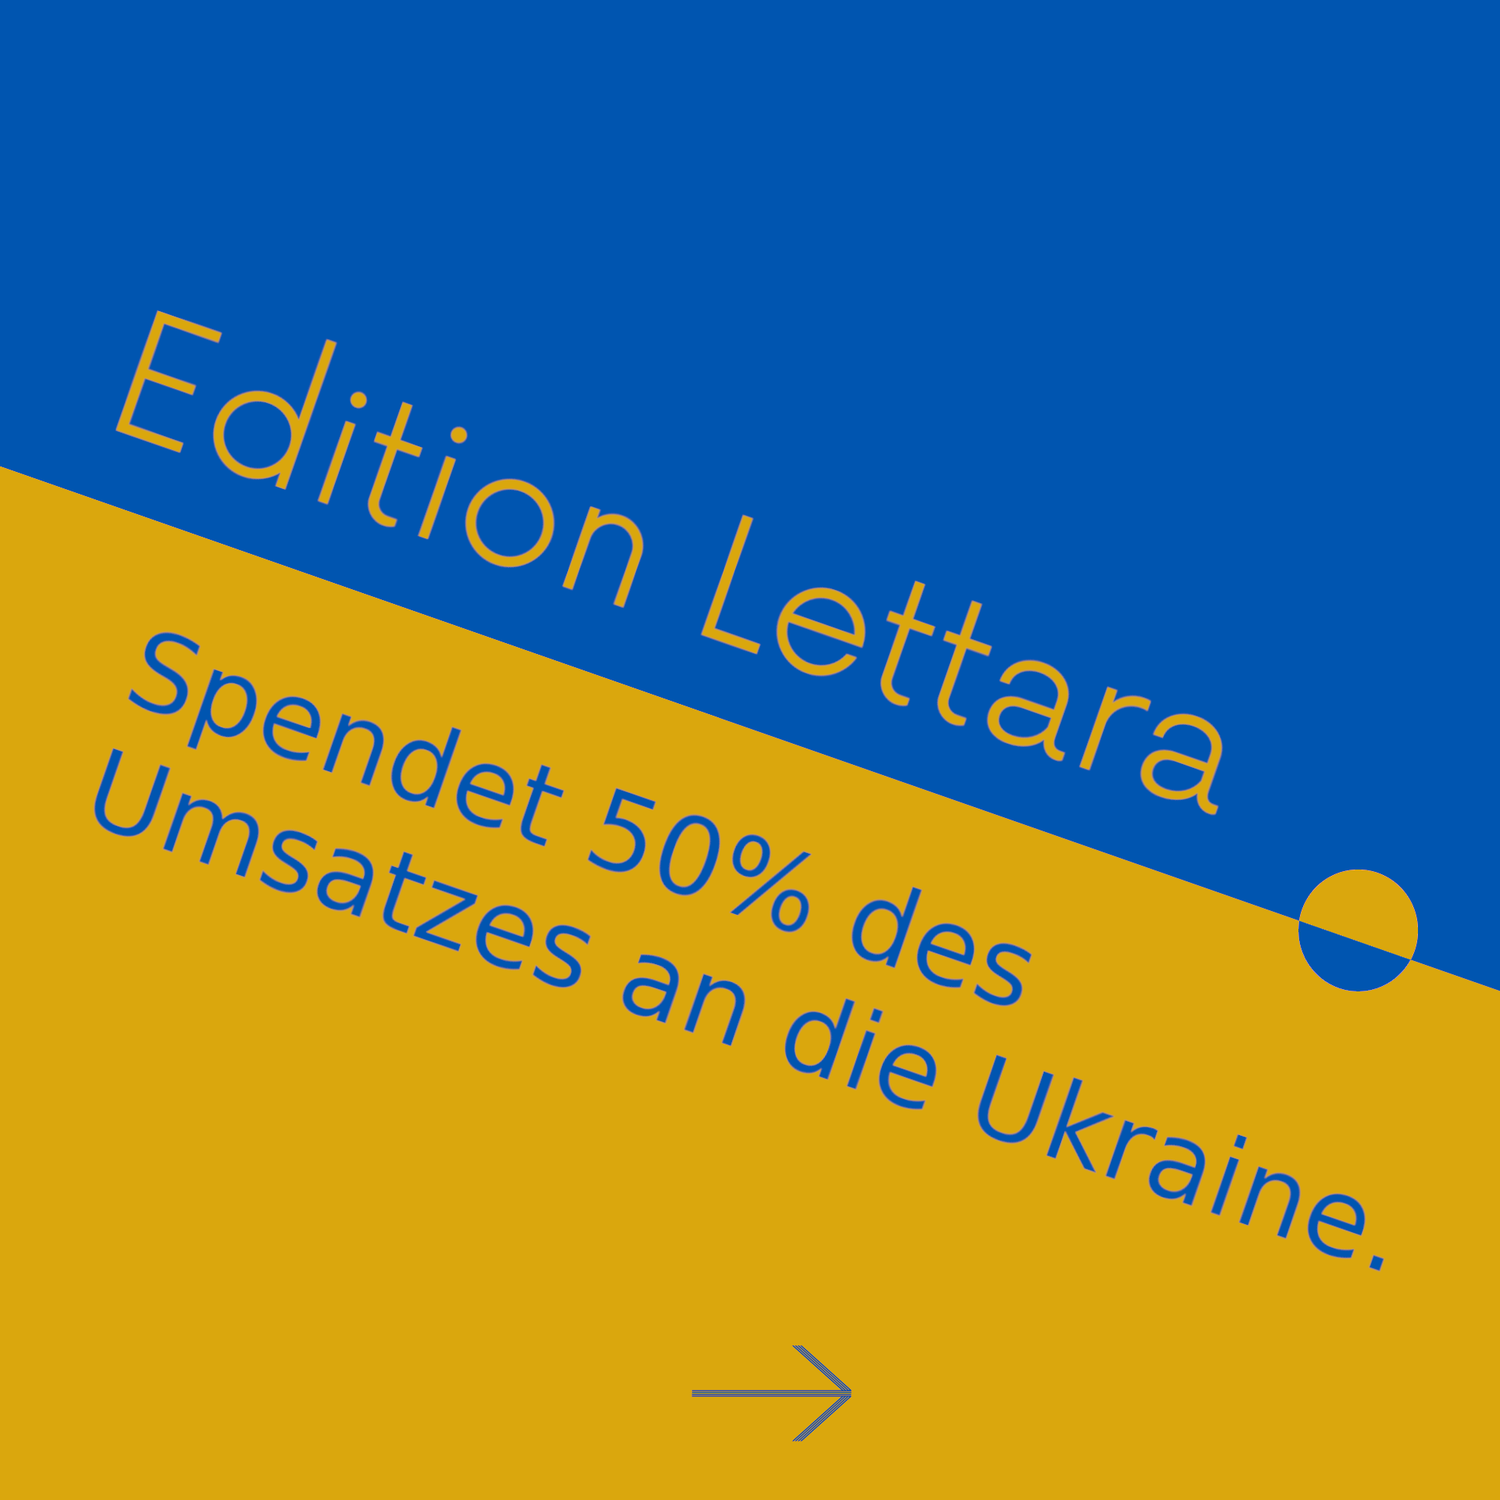 Wir spenden 50% des Umsatzes an die Ukraine!